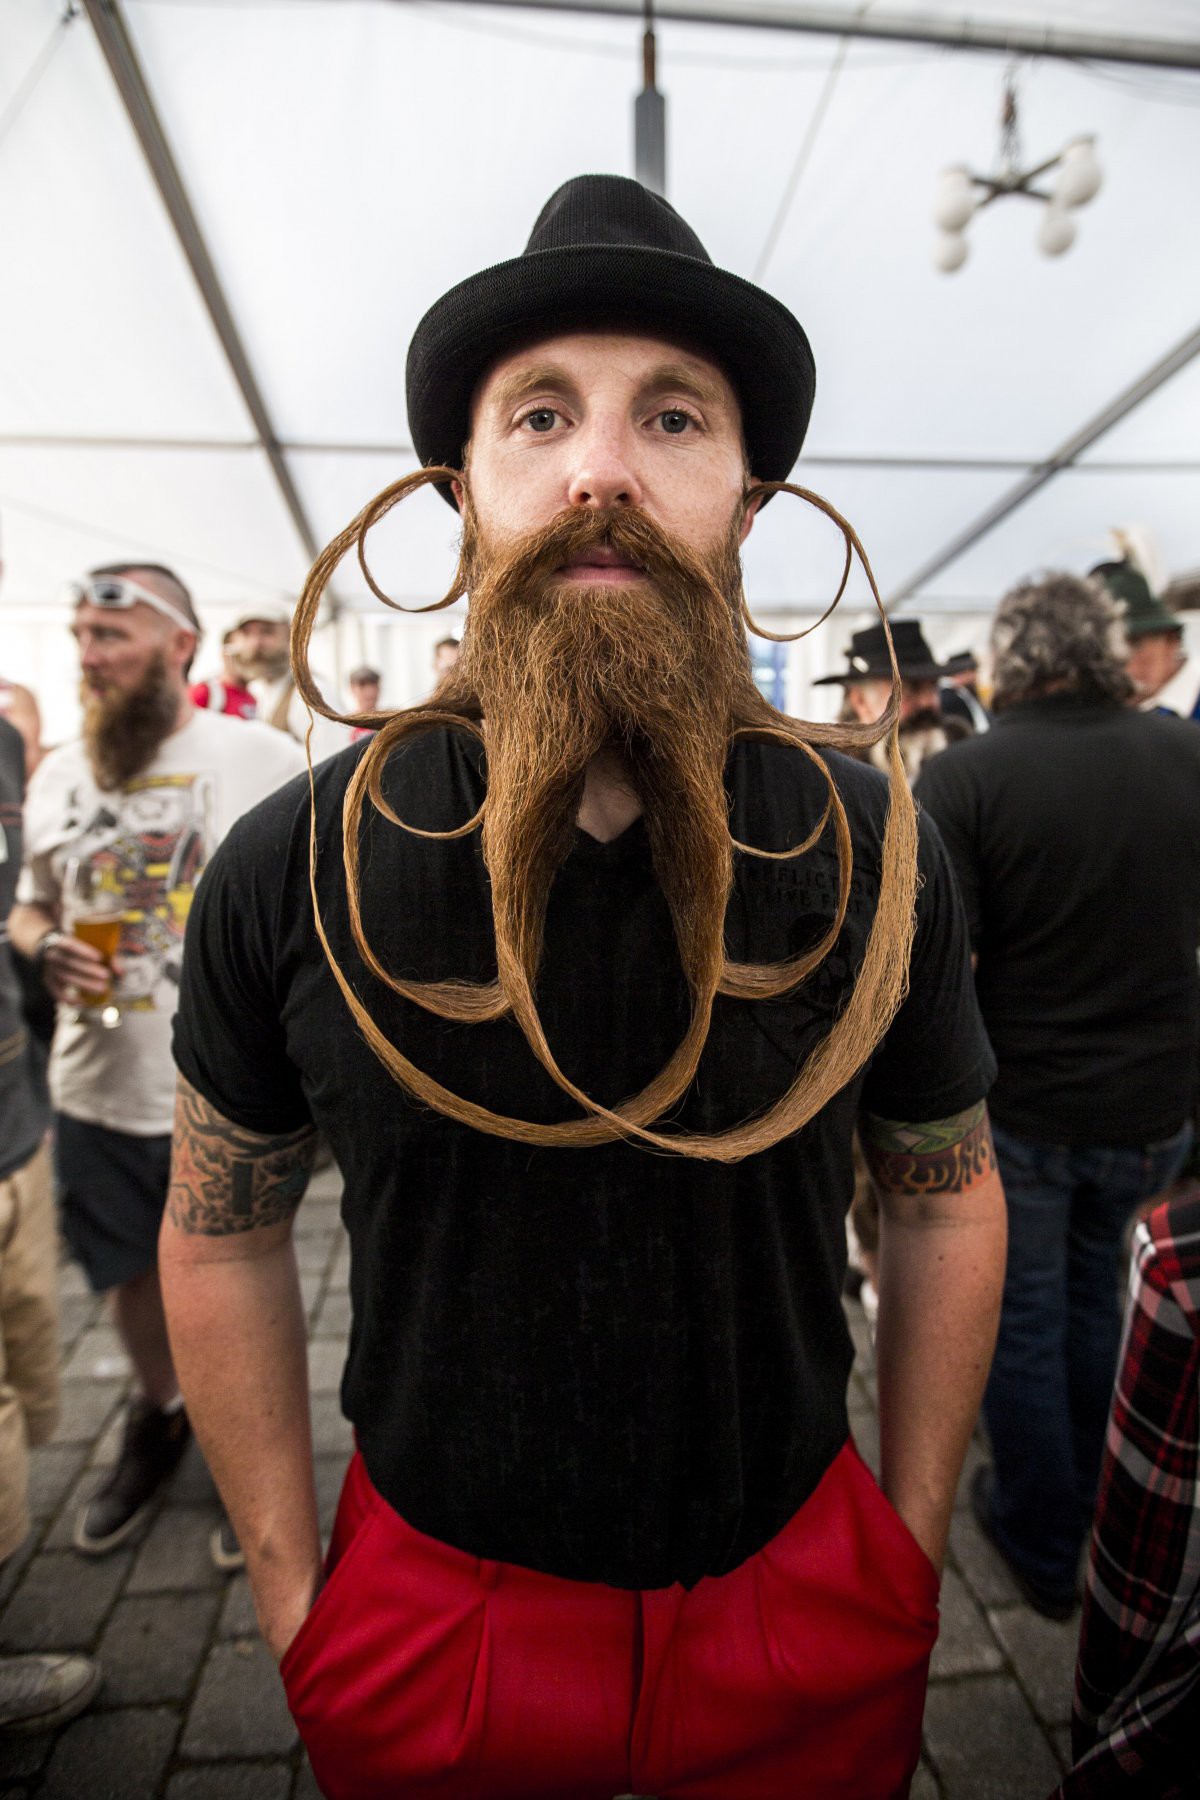 18 умопомрачительных портретов участников Всемирного чемпионата бород и усов 2015 борода, мужчины, портрет, усы